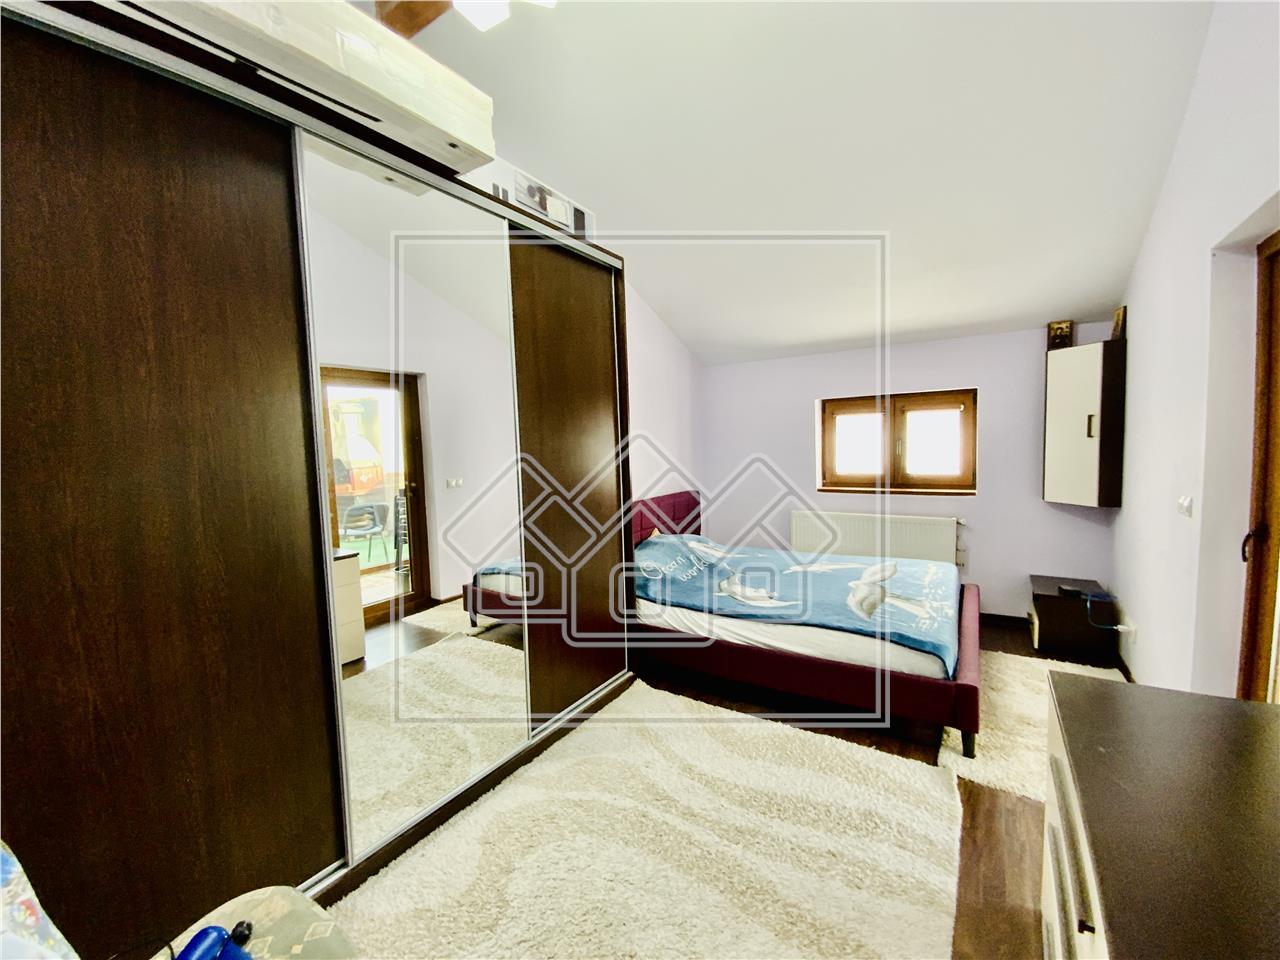 Apartament de vanzare in Sibiu - 3 camera, terasa 14mp - Zona Terezian